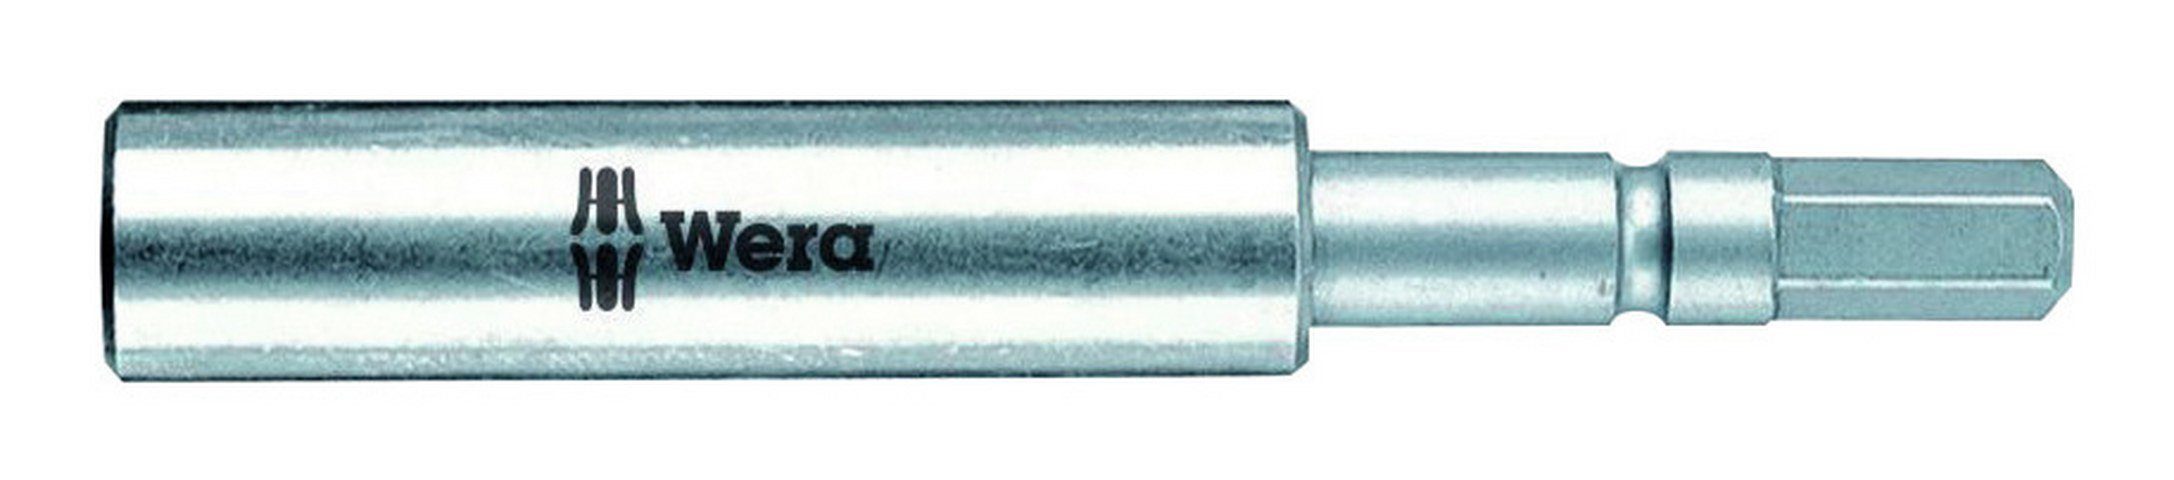 Wera Bithalter, 5,5 mm für 1/4" Bits Magnet + Sprengring 72 mm